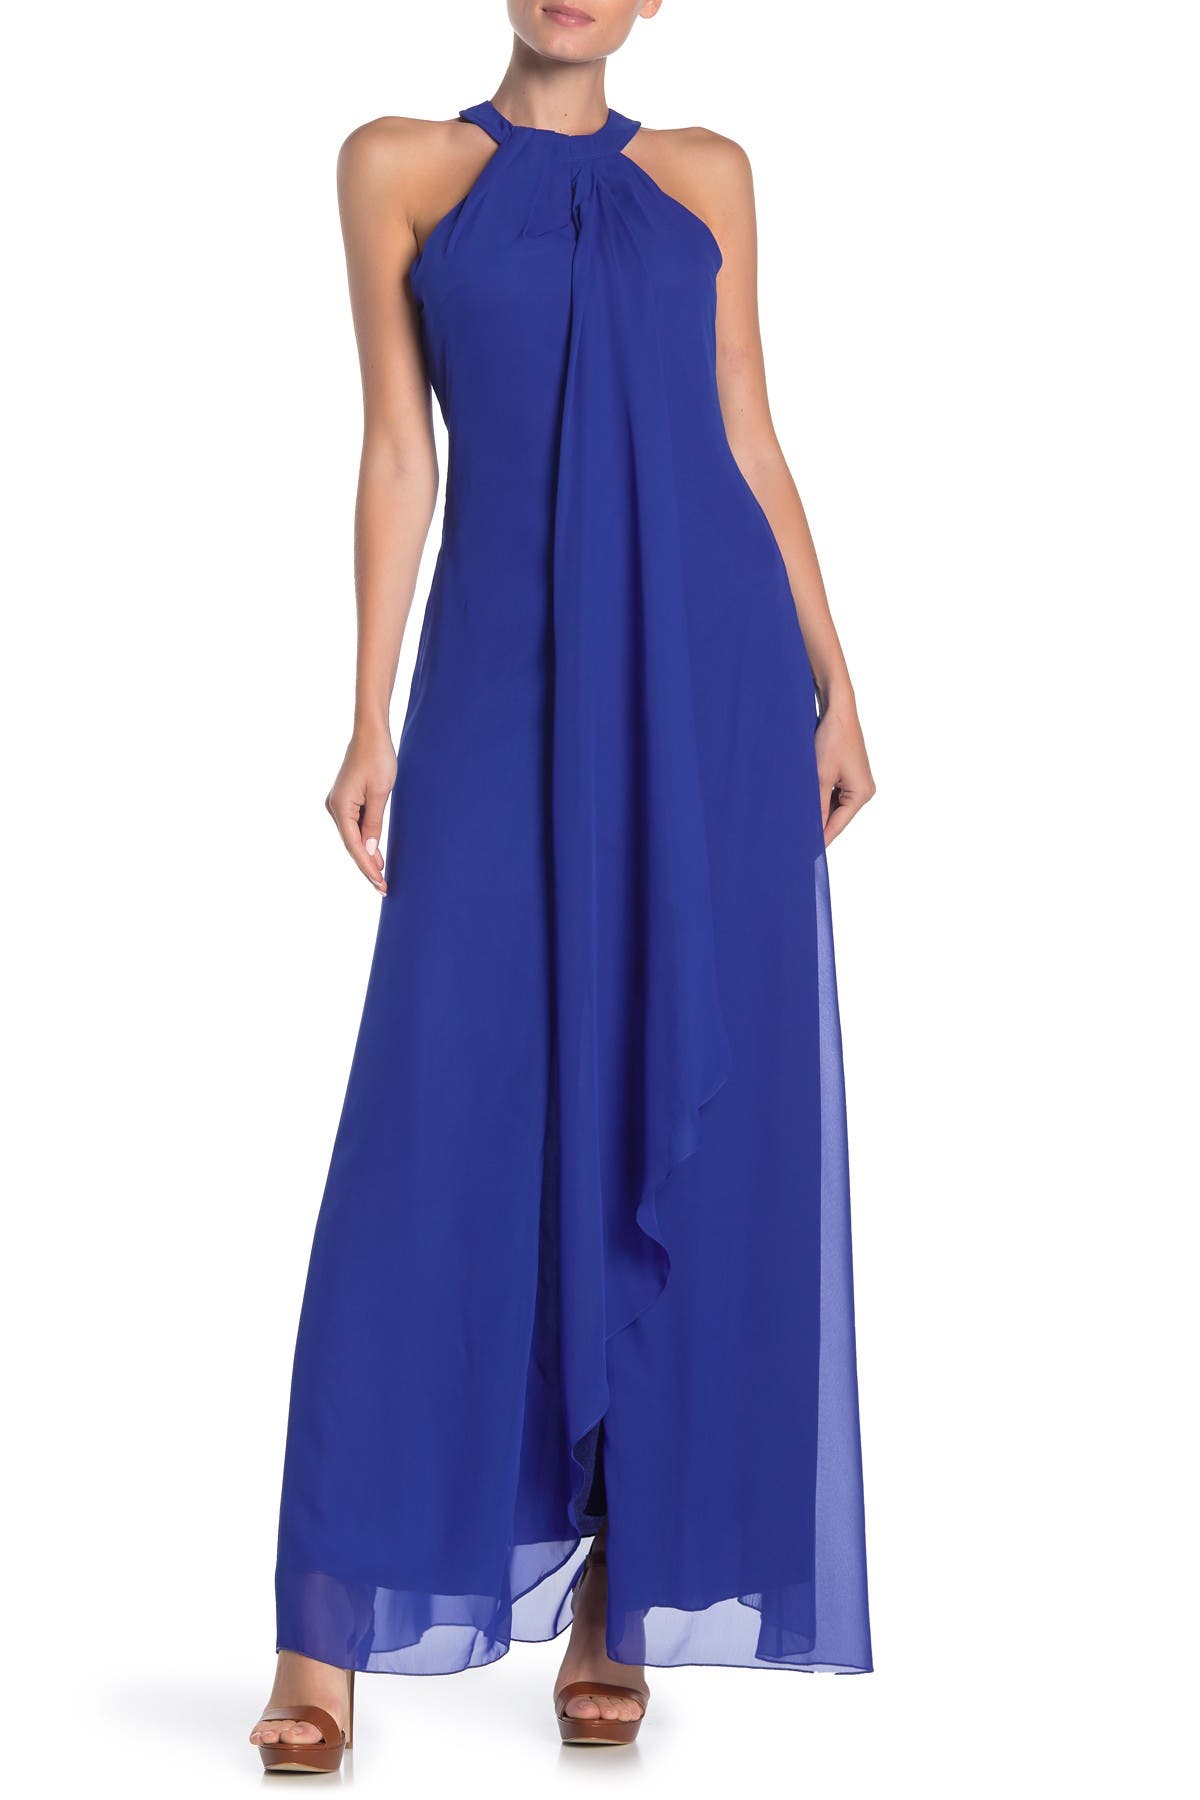 nordstrom blue maxi dress